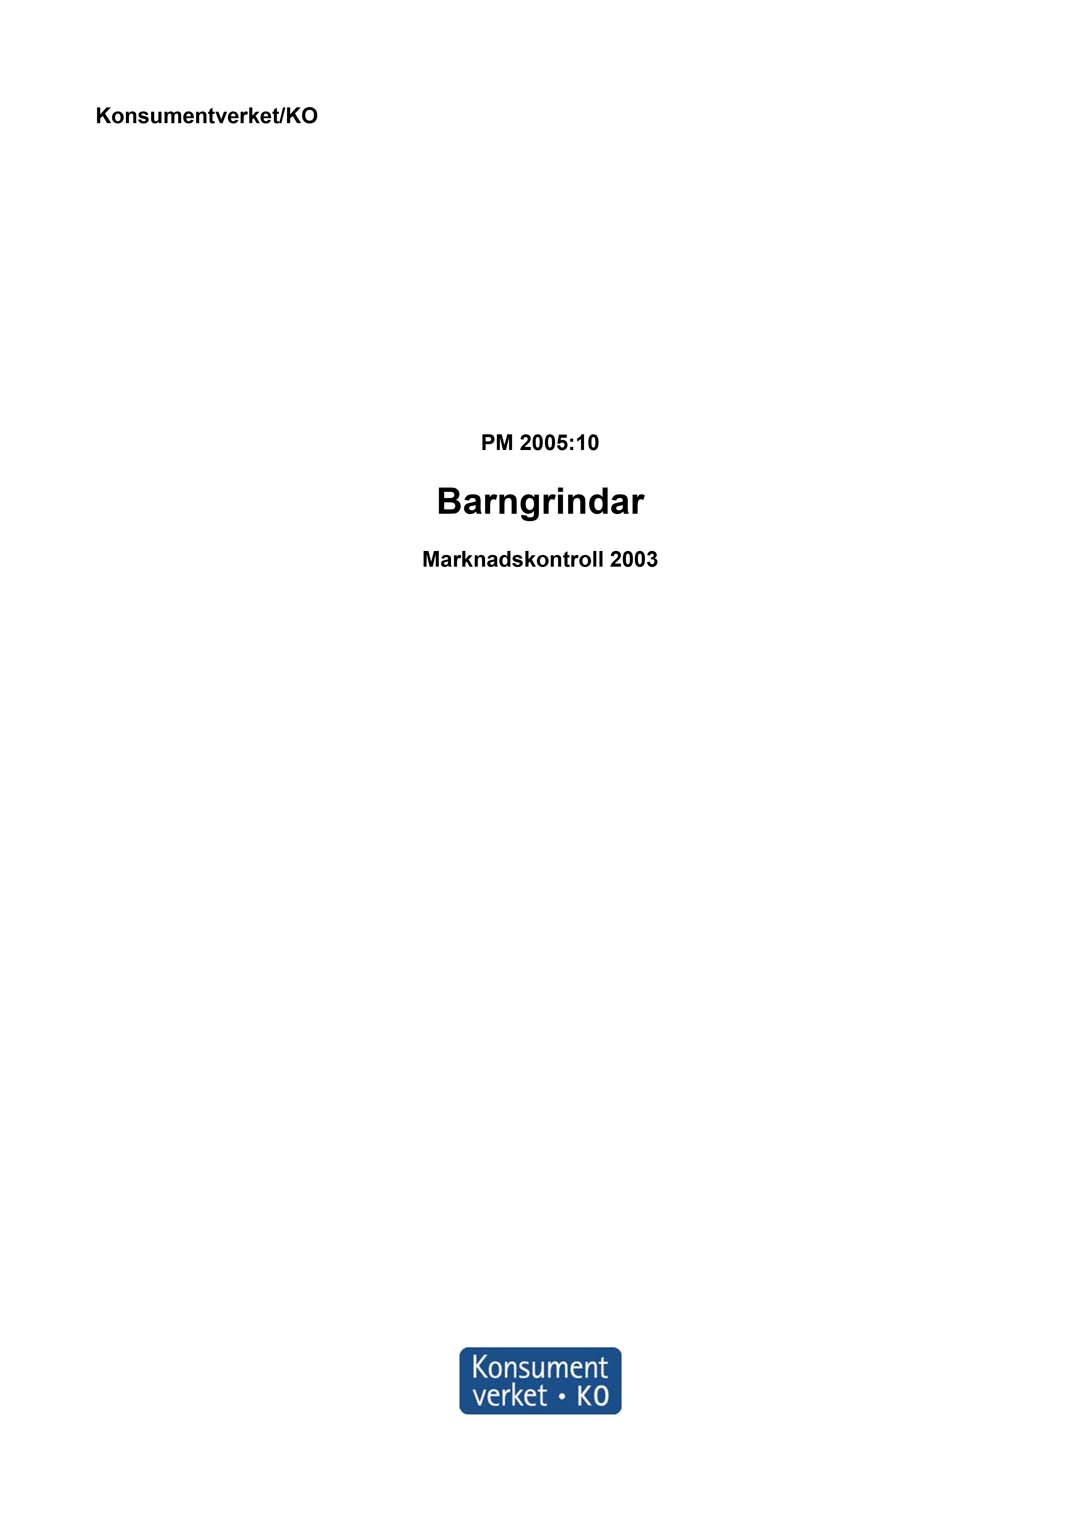 Rapport 2005:10 Barngrindar - marknadskontroll 2003